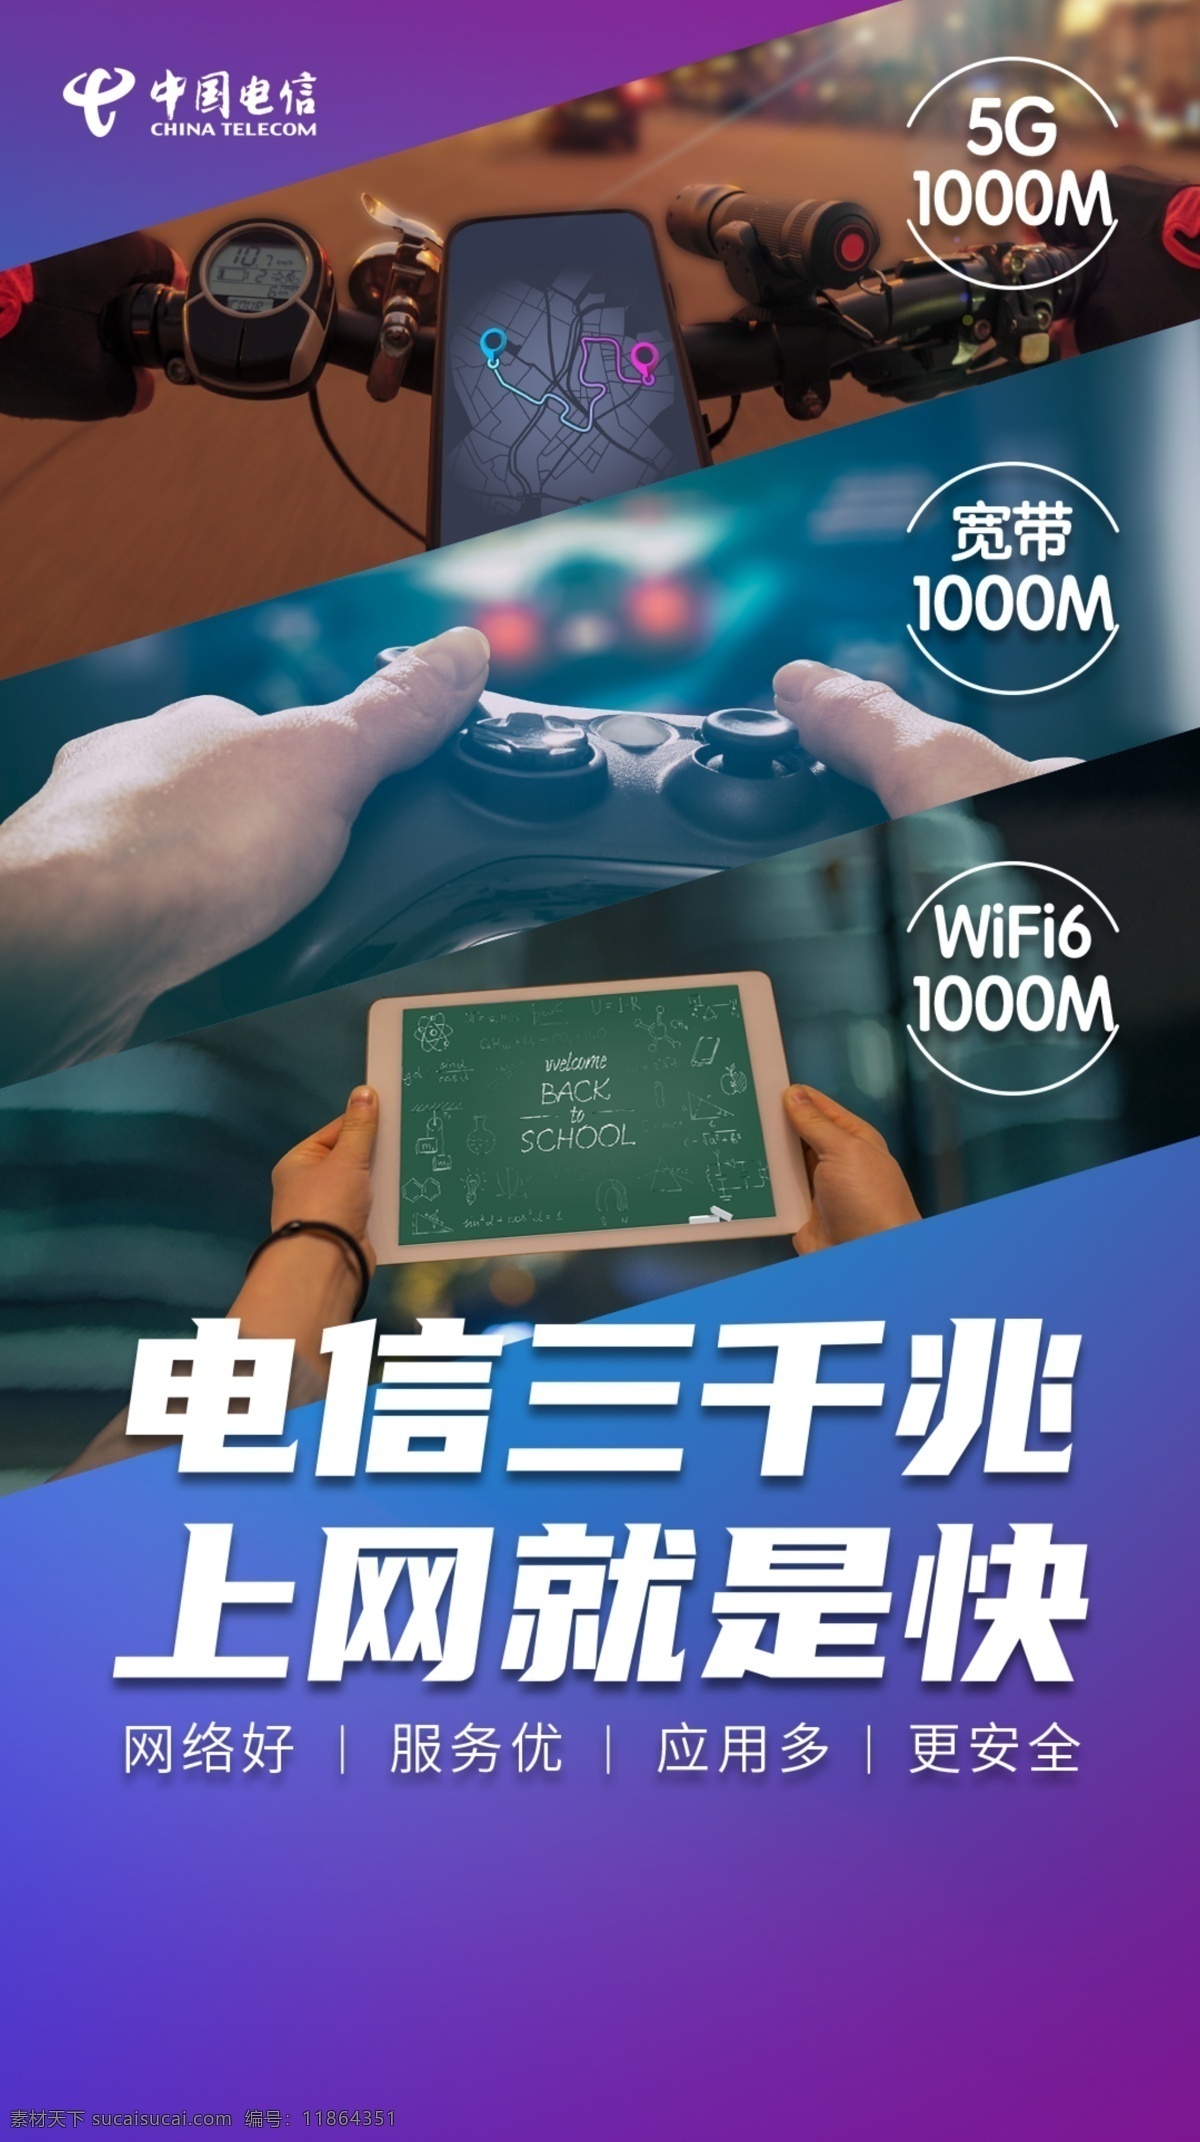 中国电信 三 千兆 海报 5g 三千兆 自行车 导航 游戏 平板